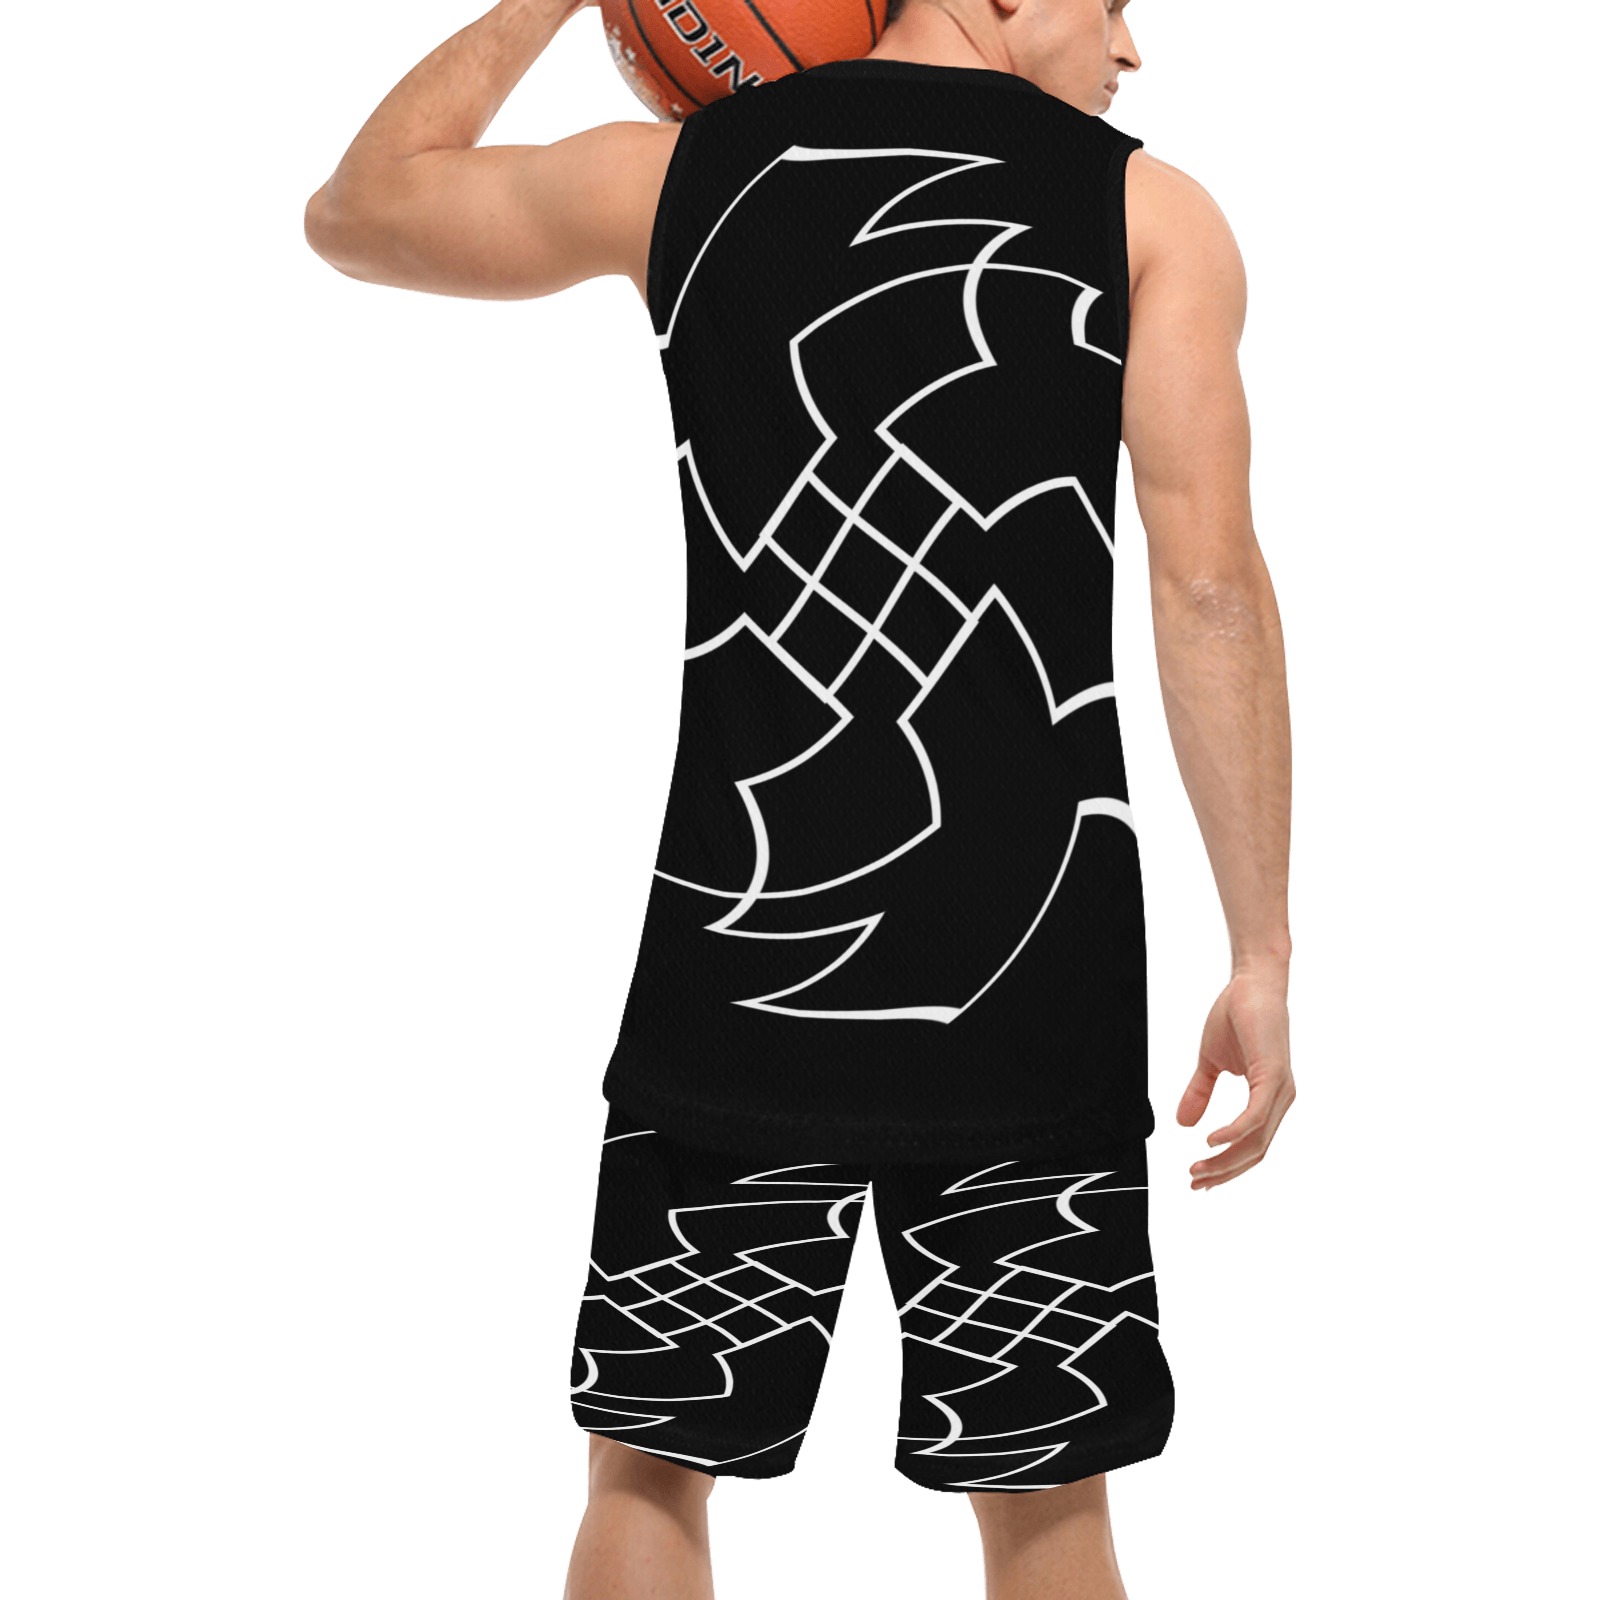 White InterlockingCrosses Twirled black Basketball Uniform with Pocket